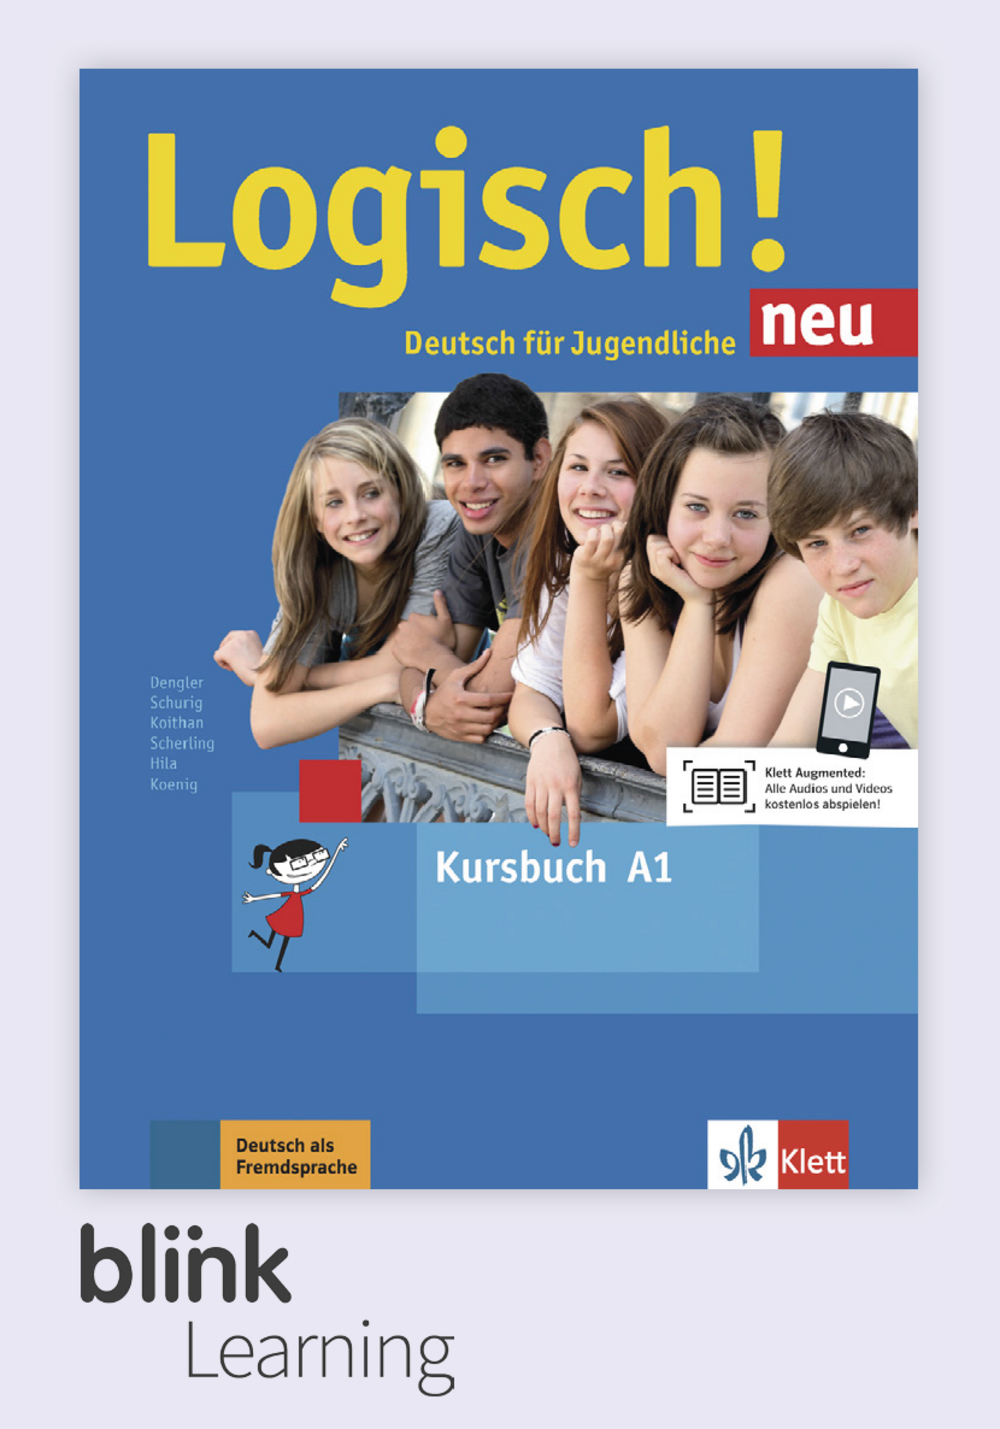 Logisch! neu A1 Digital Kursbuch fur Unterrichtende/ Цифровой учебник для учителя